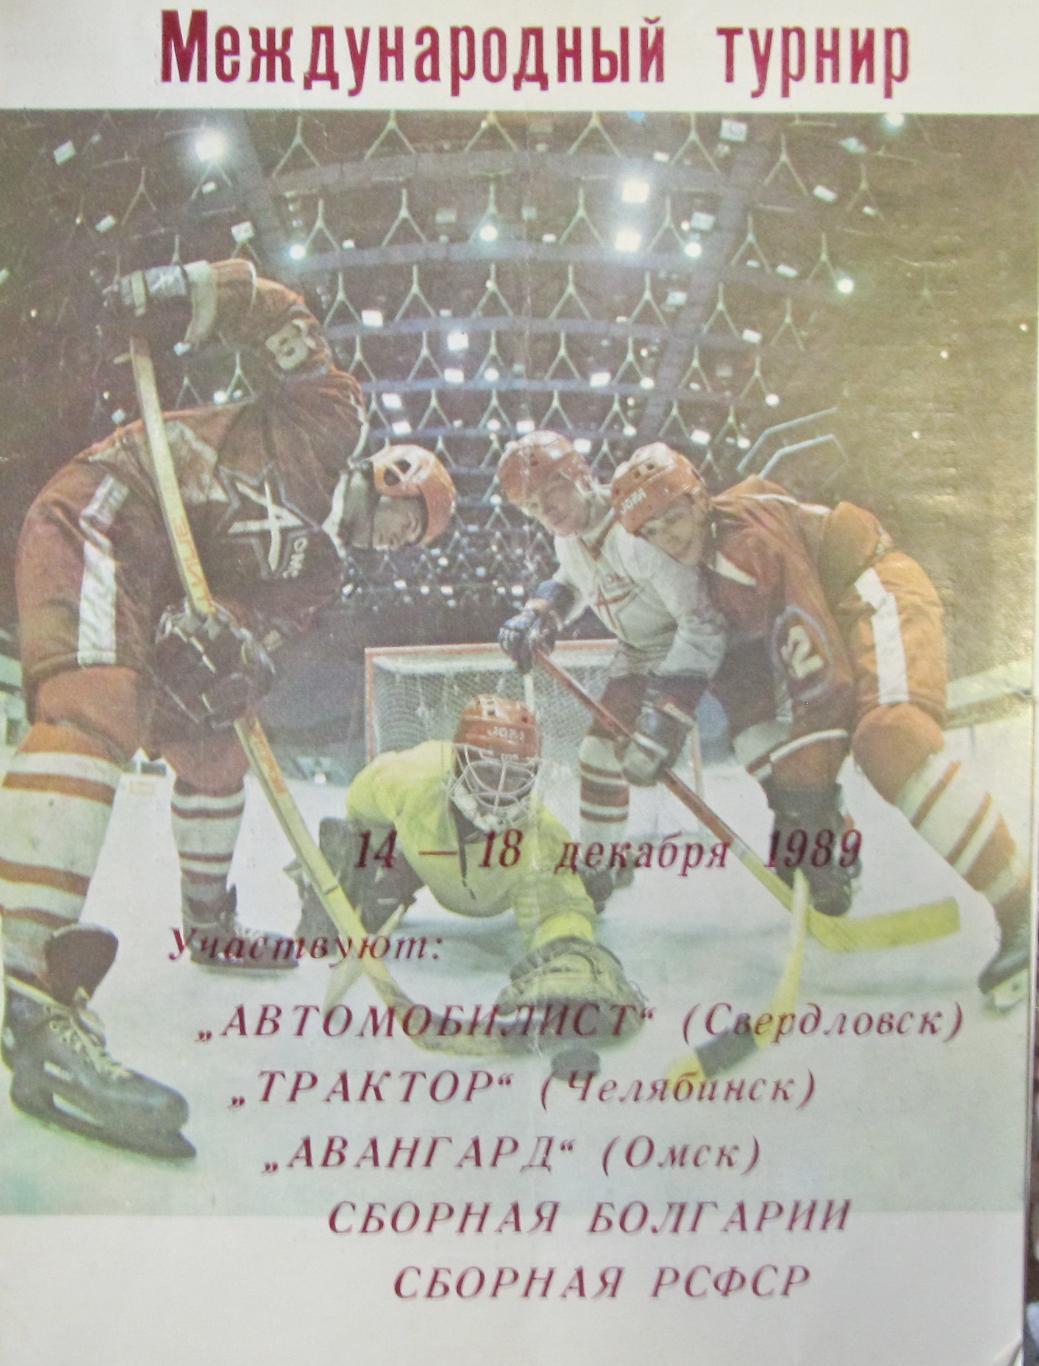 Международный турнир по х/ш.14-18.12.1989, Омск